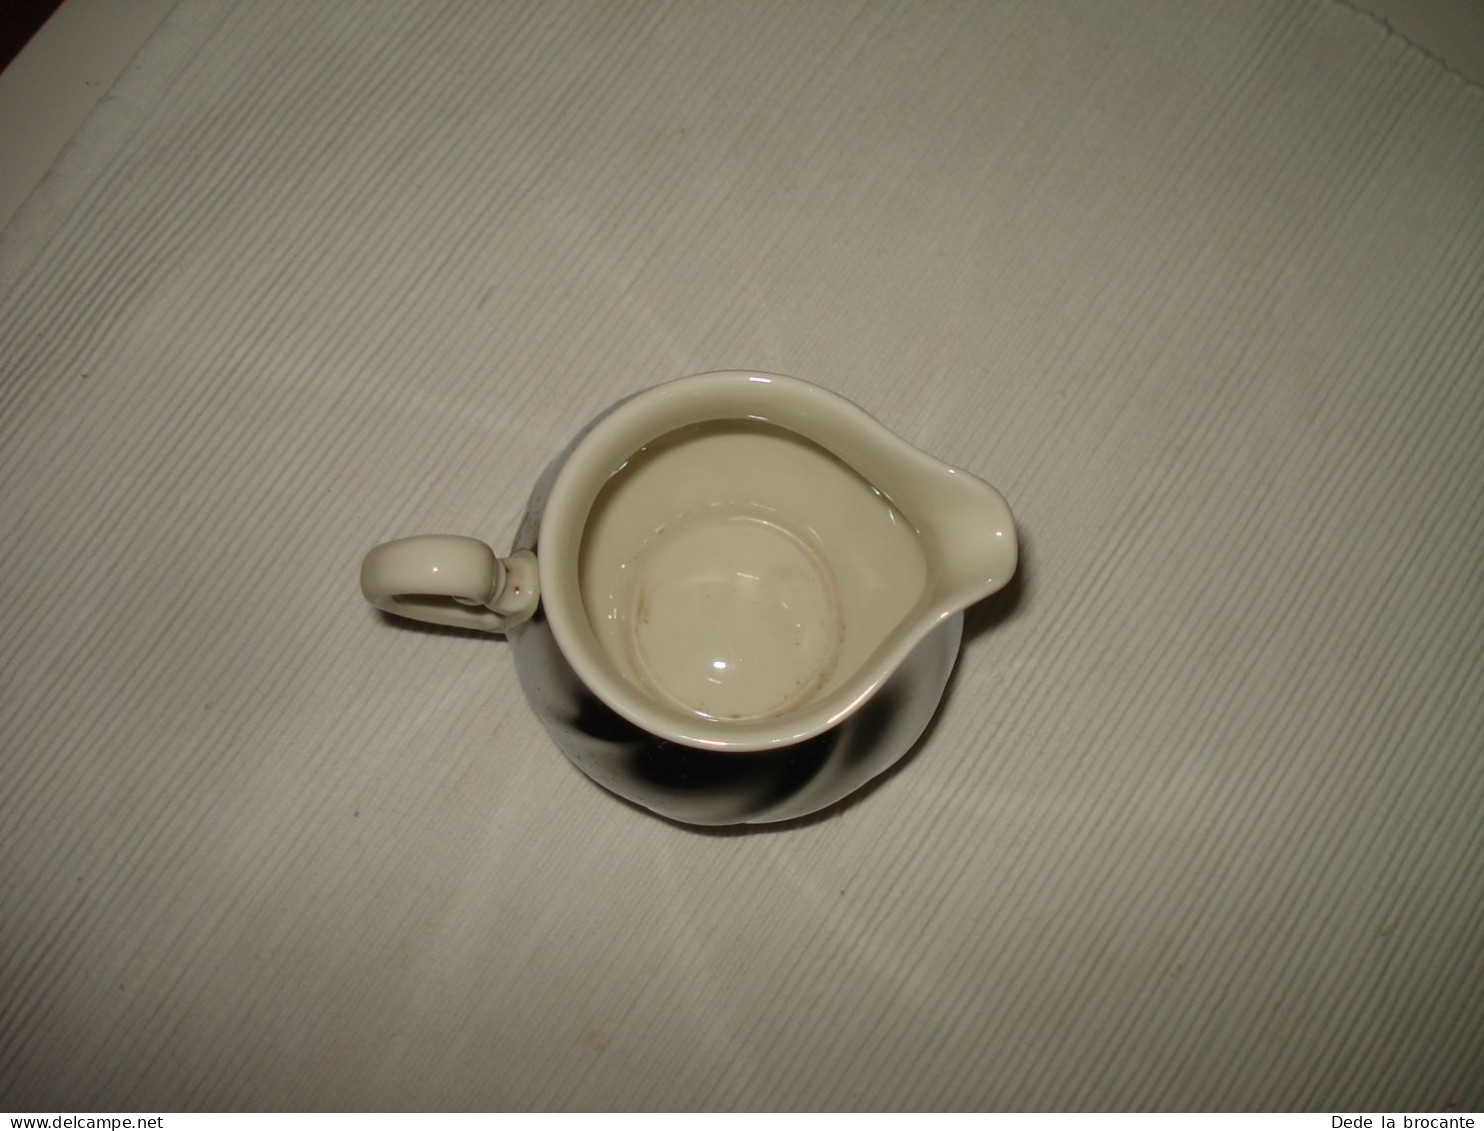 O11 / Superbe service à café thé 3 pièces en porcelaine blanche argentée